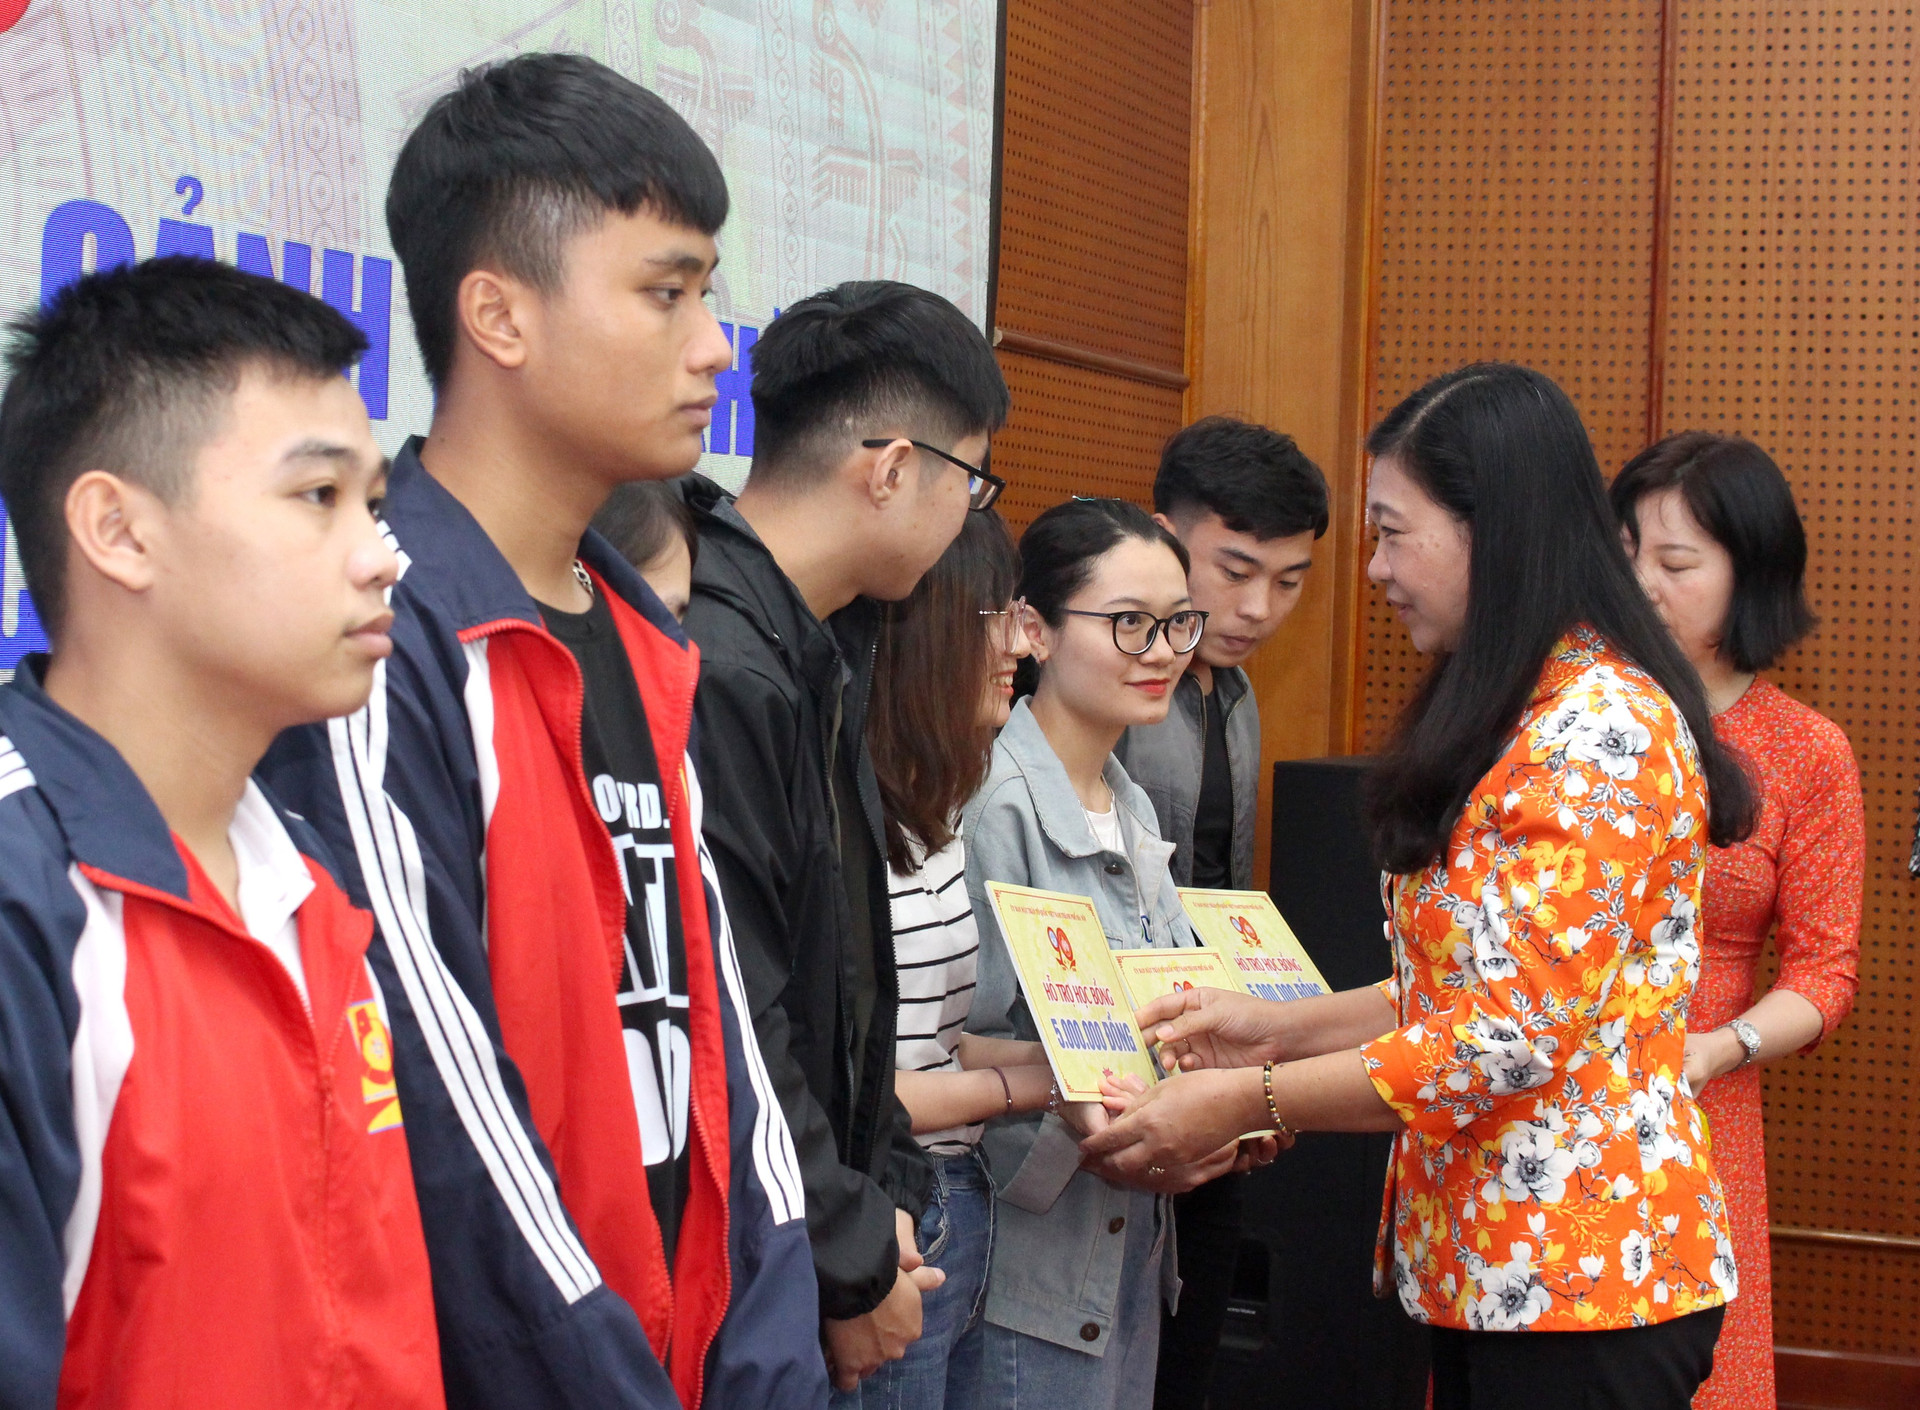 Ủy ban MTTQ Thành phố Hà Nội trao tiền hỗ trợ học bổng cho học sinh nghèo miền Trung đang học tập tại Hà Nội.